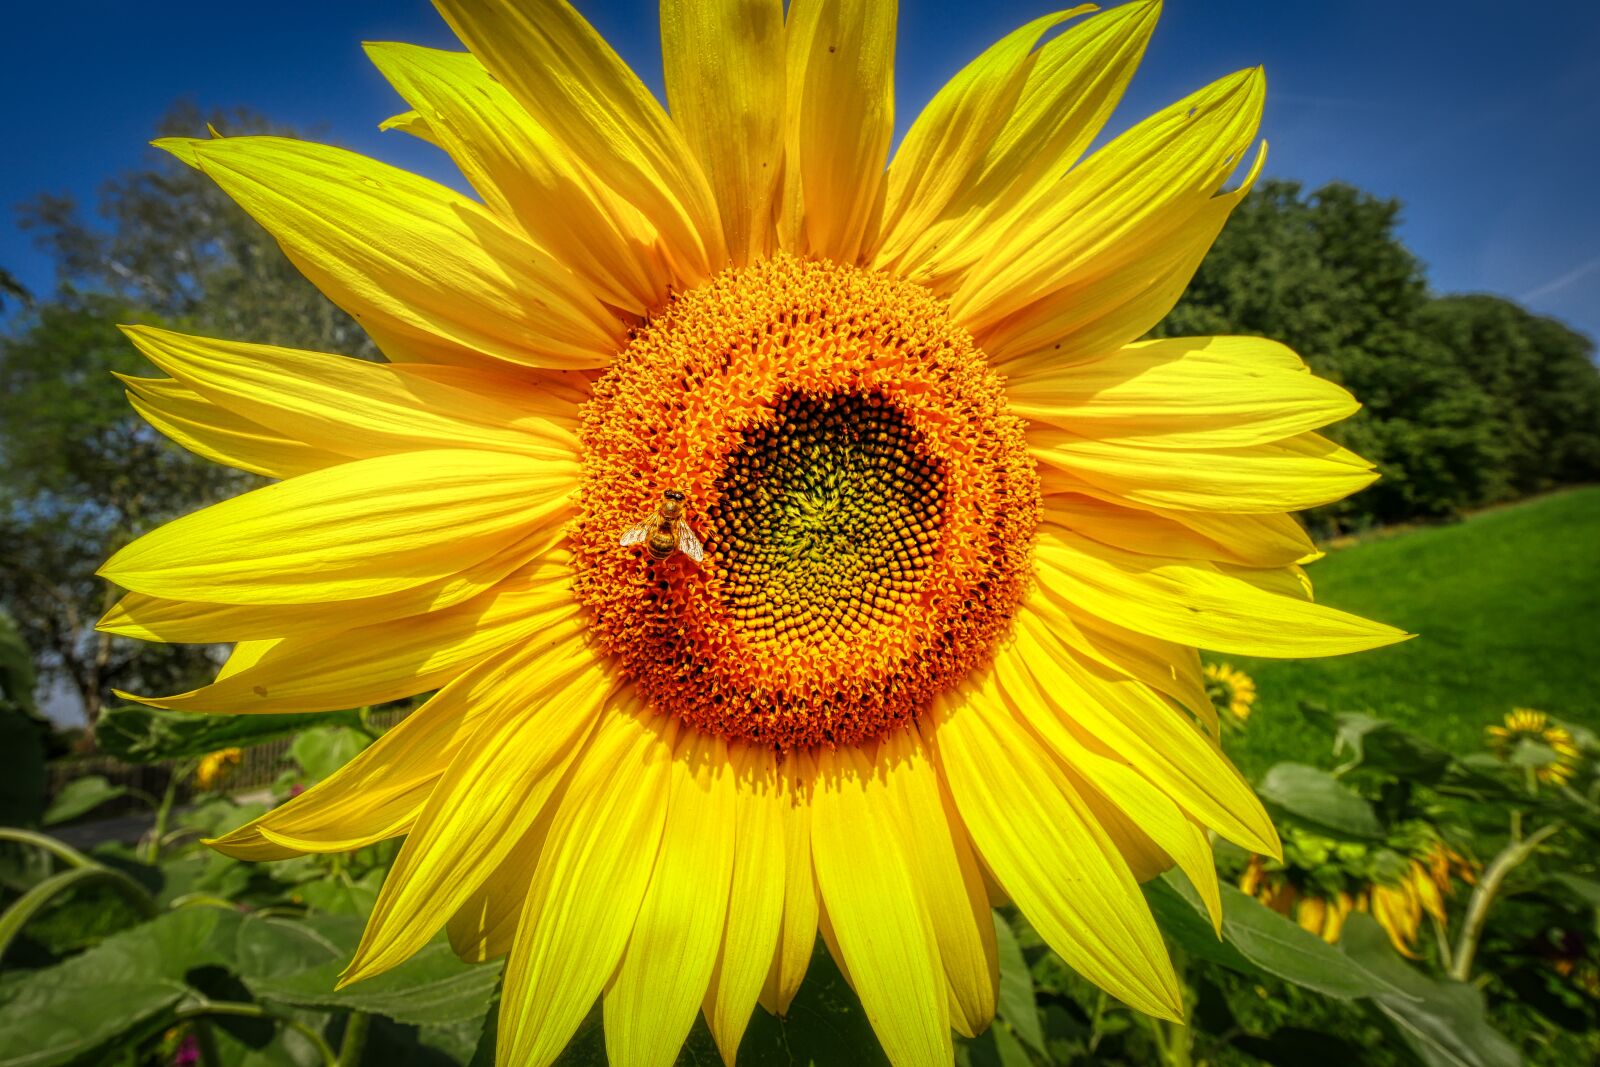 Panasonic Lumix DMC-GX8 sample photo. Sunflower, bee, yellow photography